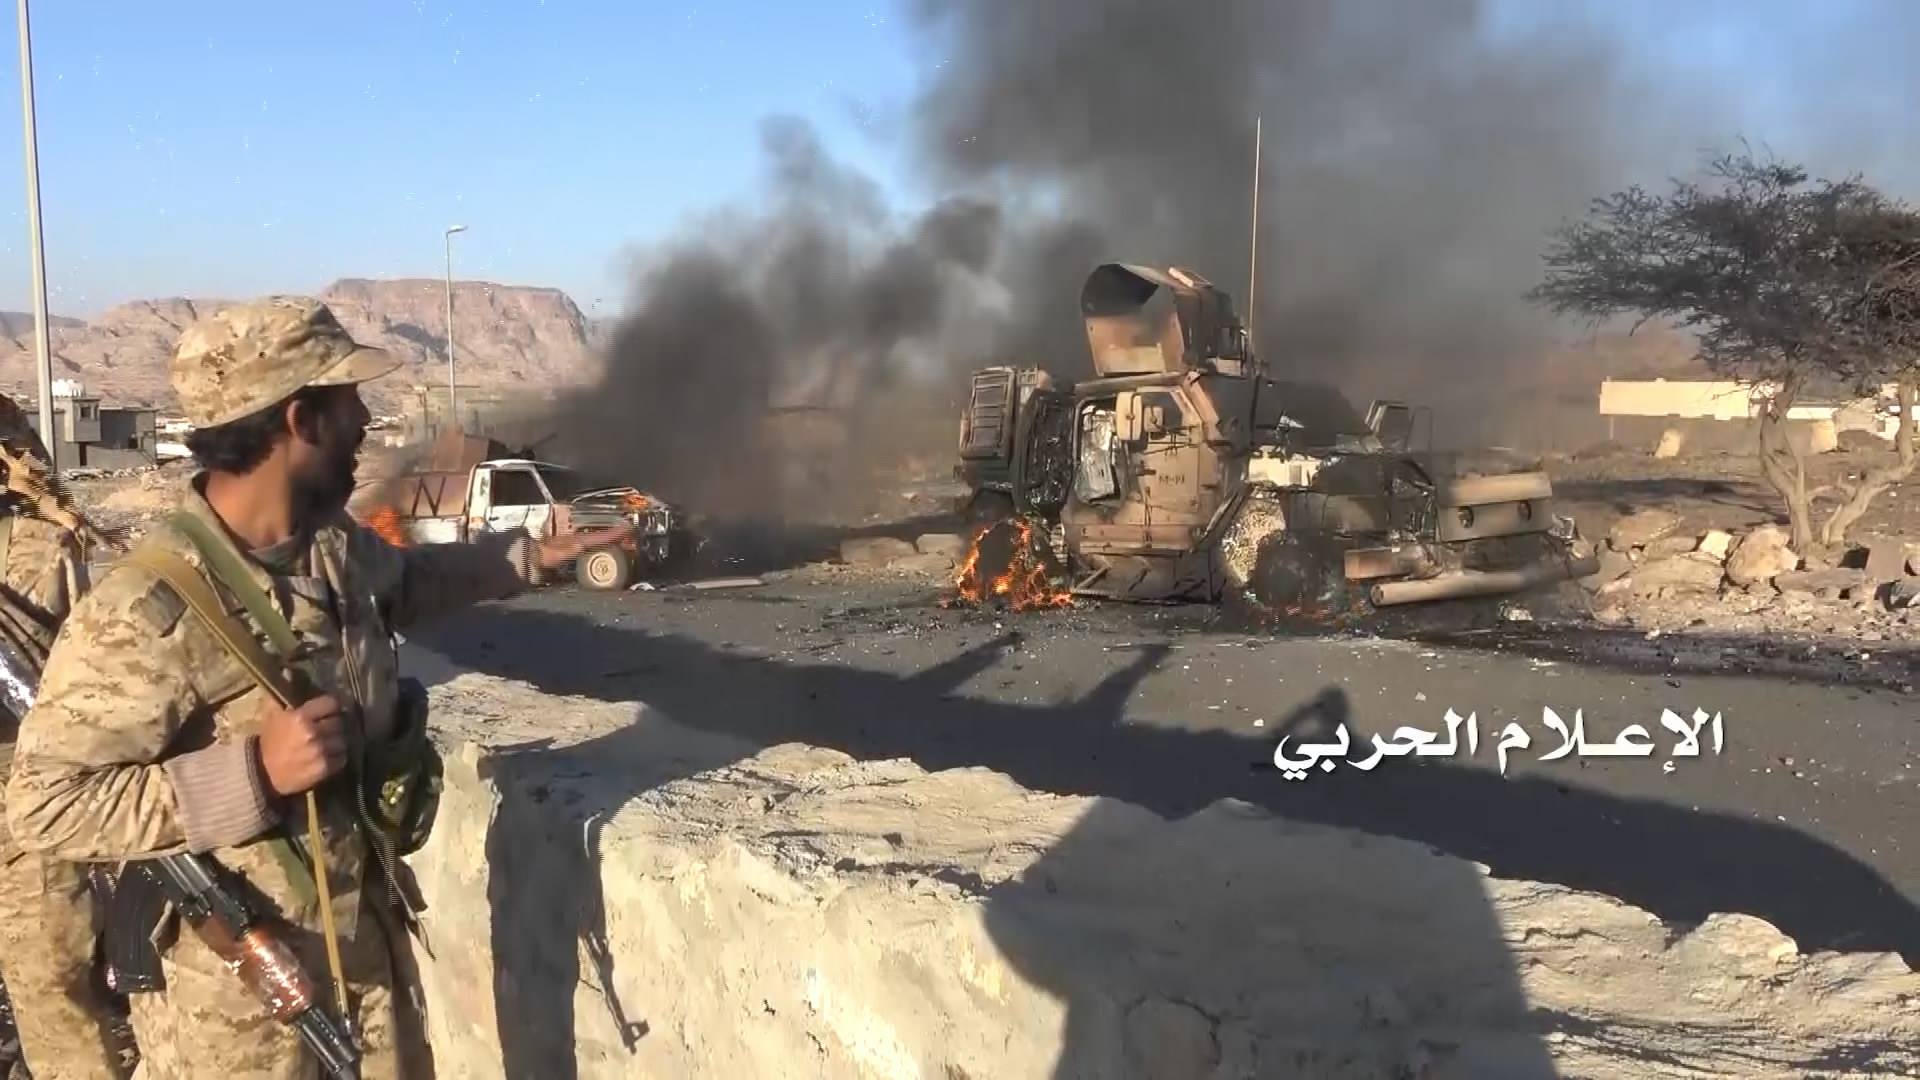 خطير للغاية.. مليشيات الحوثي تسيطر على معسكر استراتيجي بكل مواقعه ومعداته بتواطؤ فاضح من الشرعية البيضاء